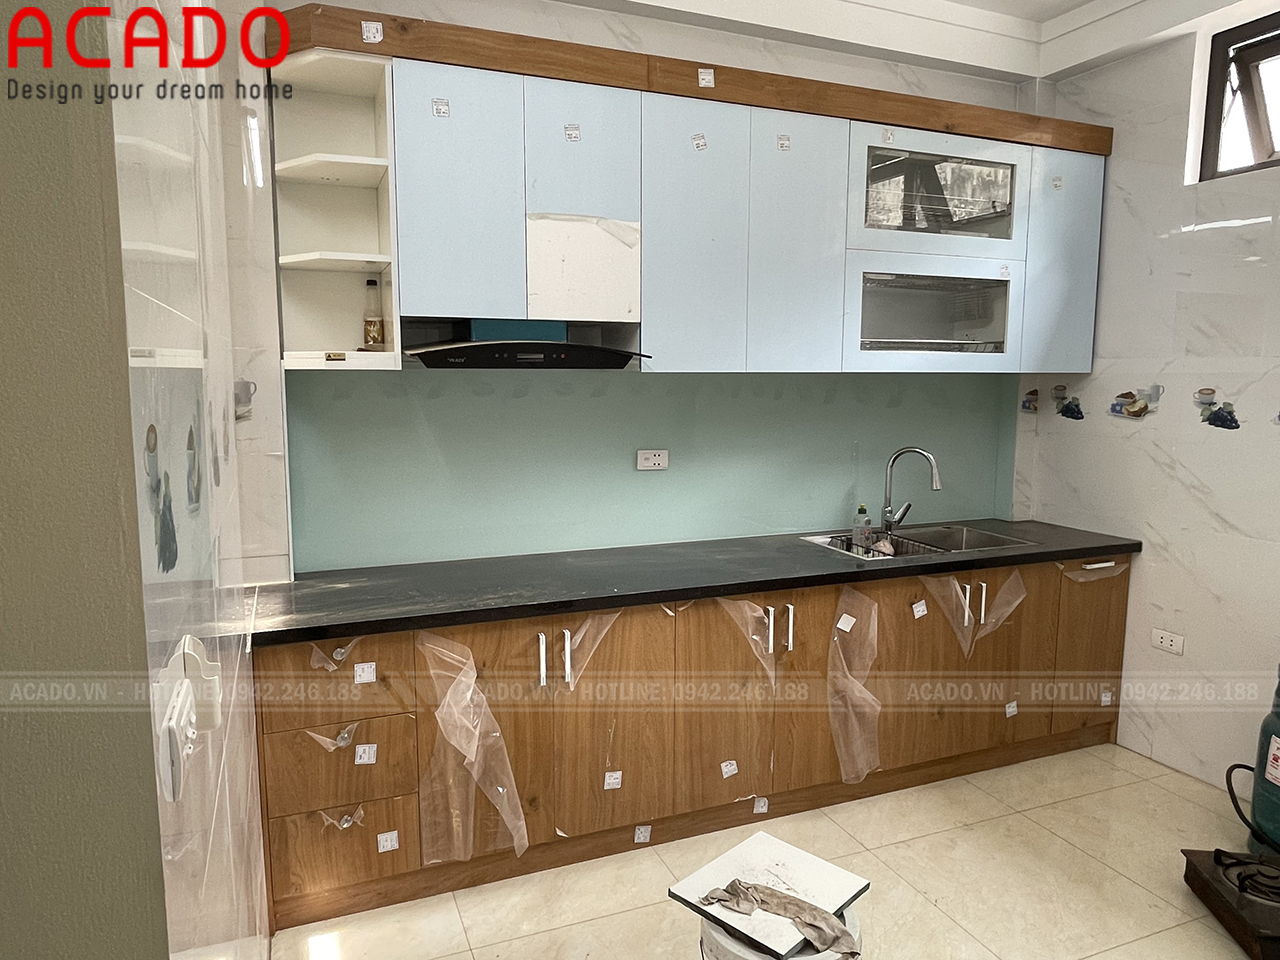 Tủ bếp mdf phủ laminate màu vân gỗ sang trọng. Tủ bếp hình chữ i phù hợp với bếp có diện tích nhỏ như chung cư